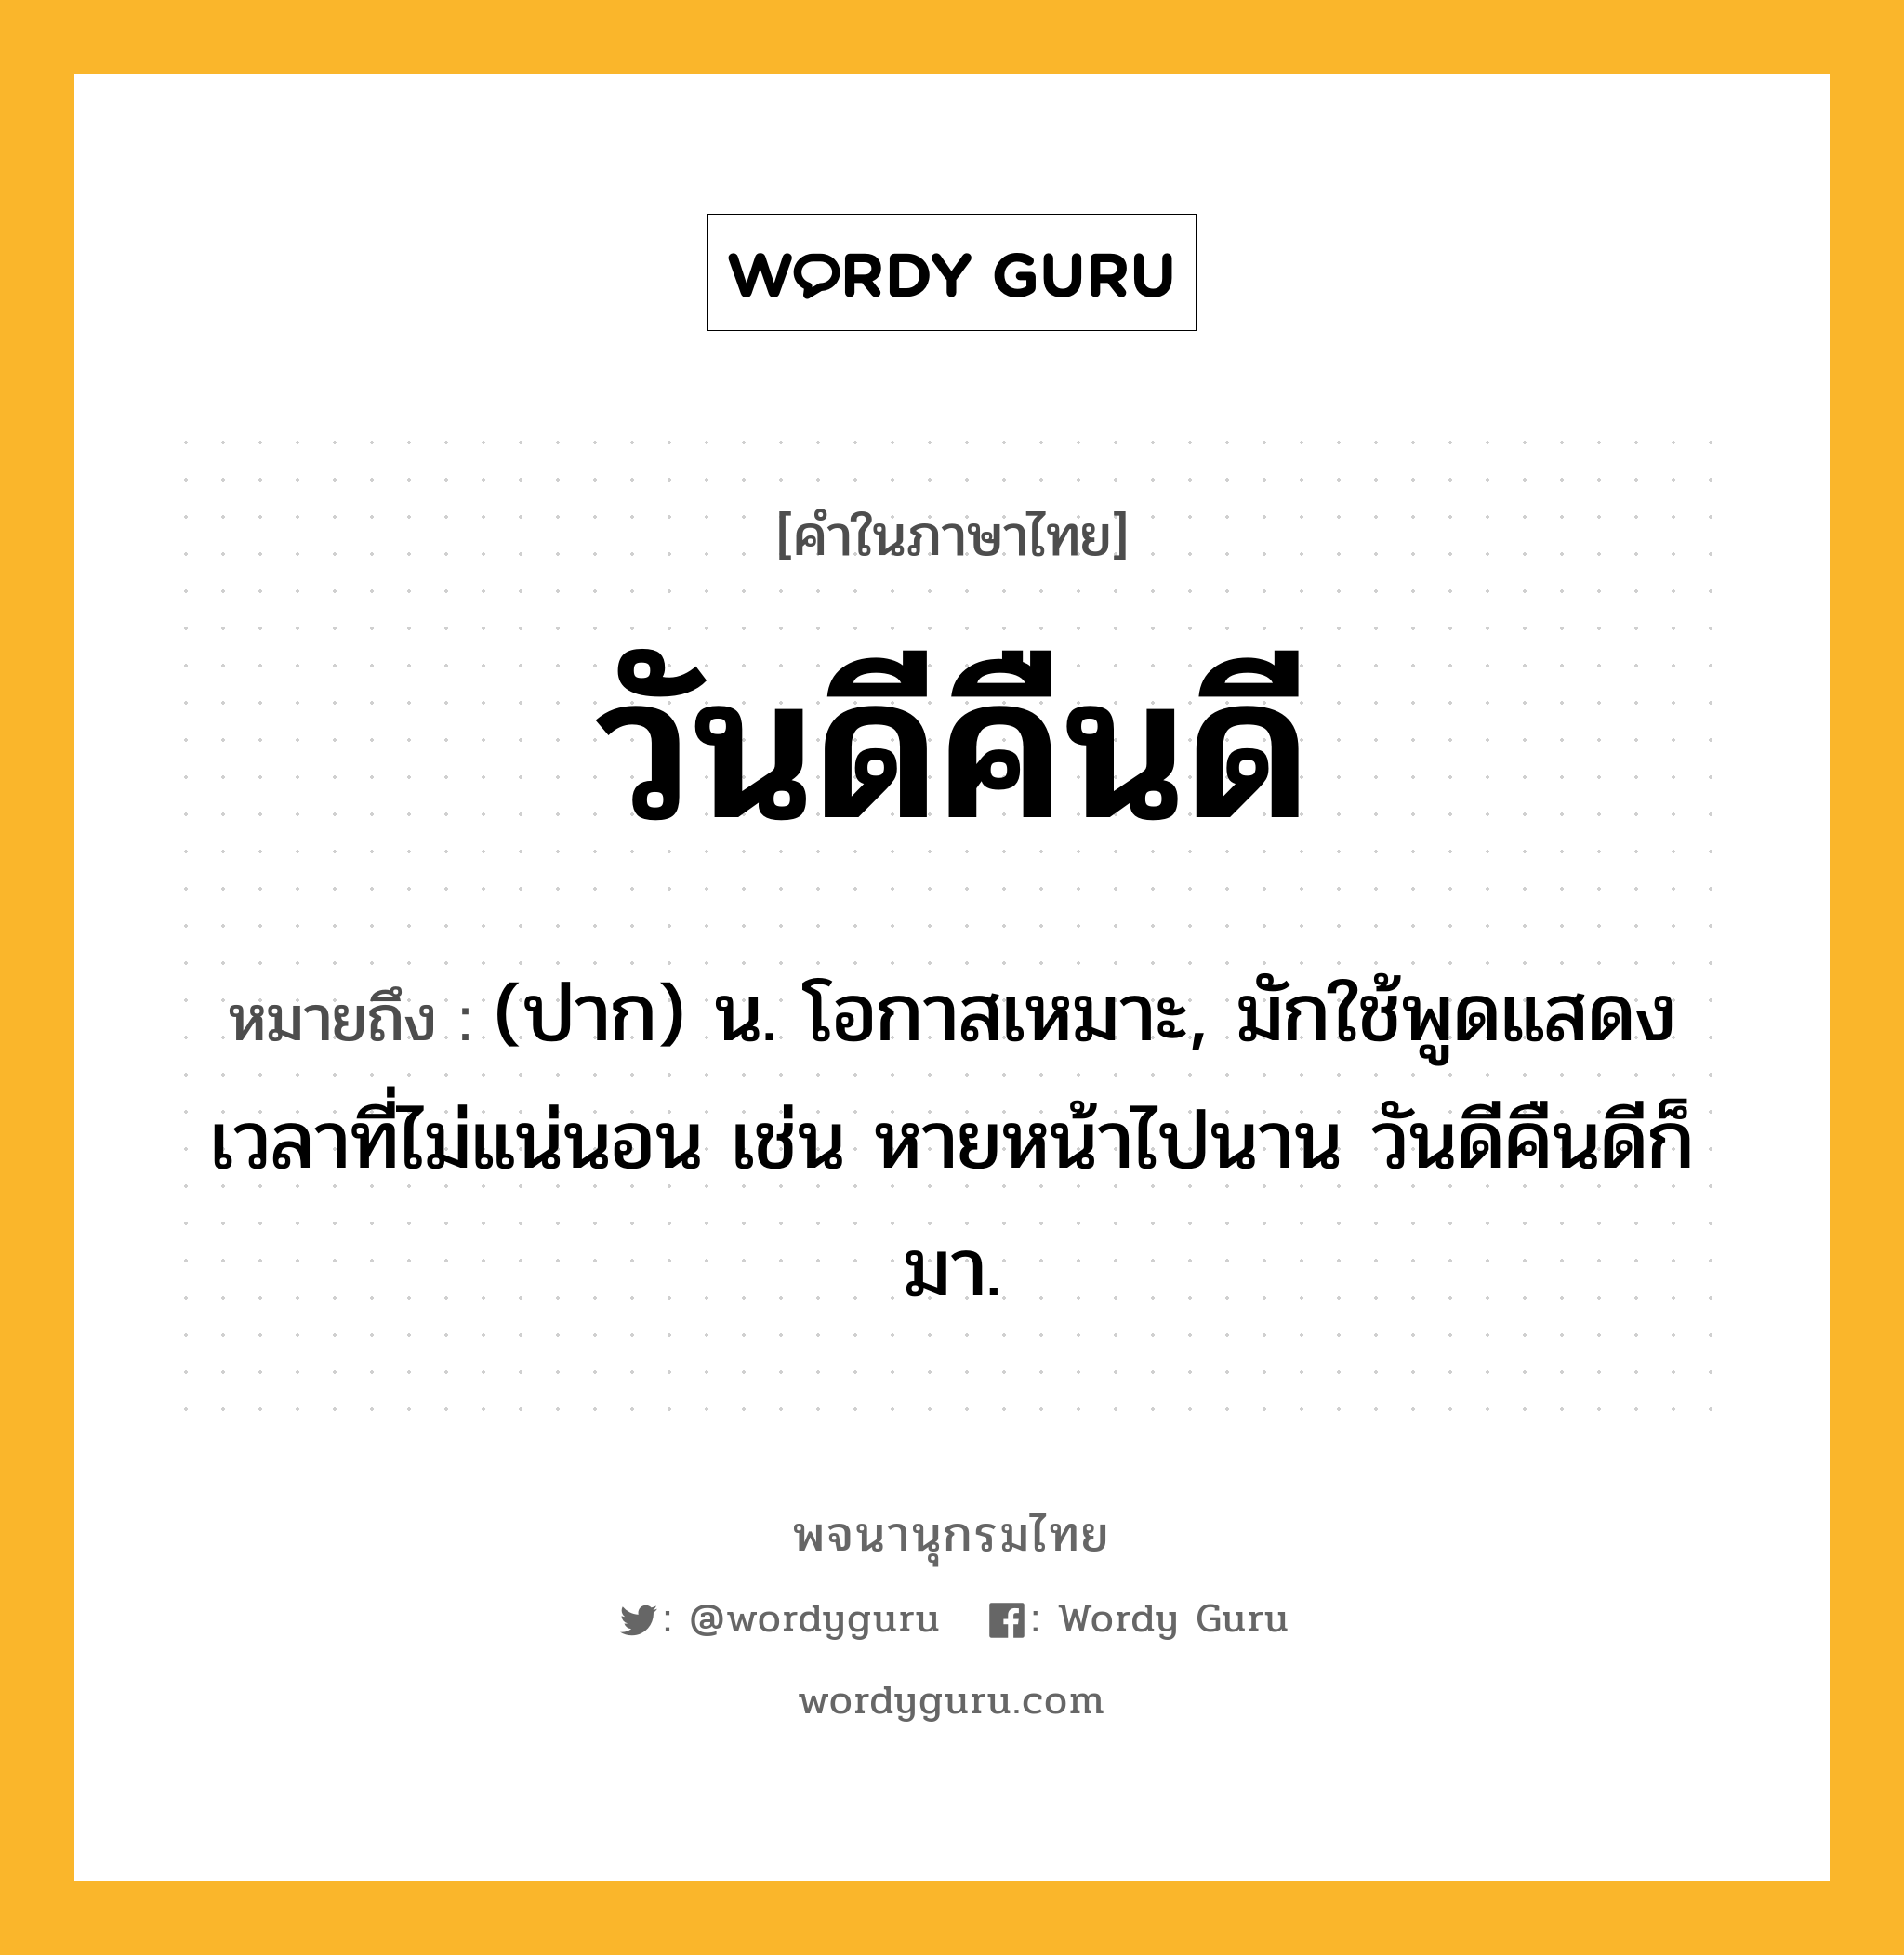 วันดีคืนดี ความหมาย หมายถึงอะไร?, คำในภาษาไทย วันดีคืนดี หมายถึง (ปาก) น. โอกาสเหมาะ, มักใช้พูดแสดงเวลาที่ไม่แน่นอน เช่น หายหน้าไปนาน วันดีคืนดีก็มา.